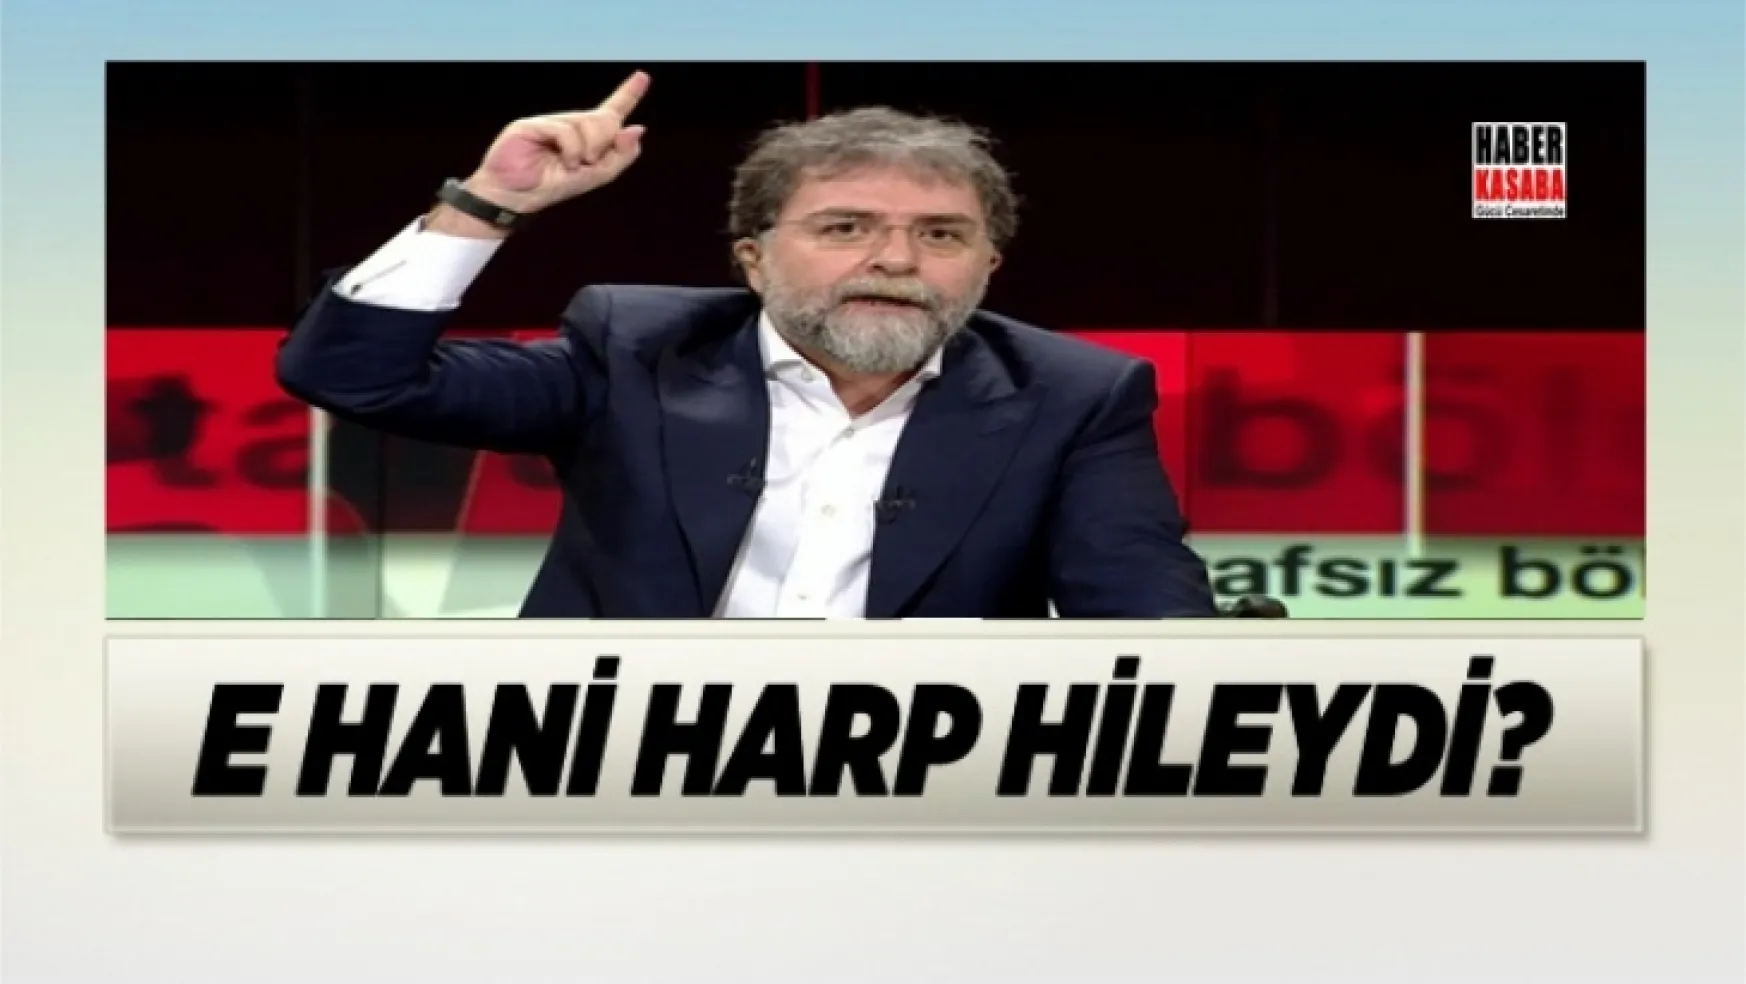 Hürriyet yazarı Ahmet Hakan, E-hani harp hileydi?